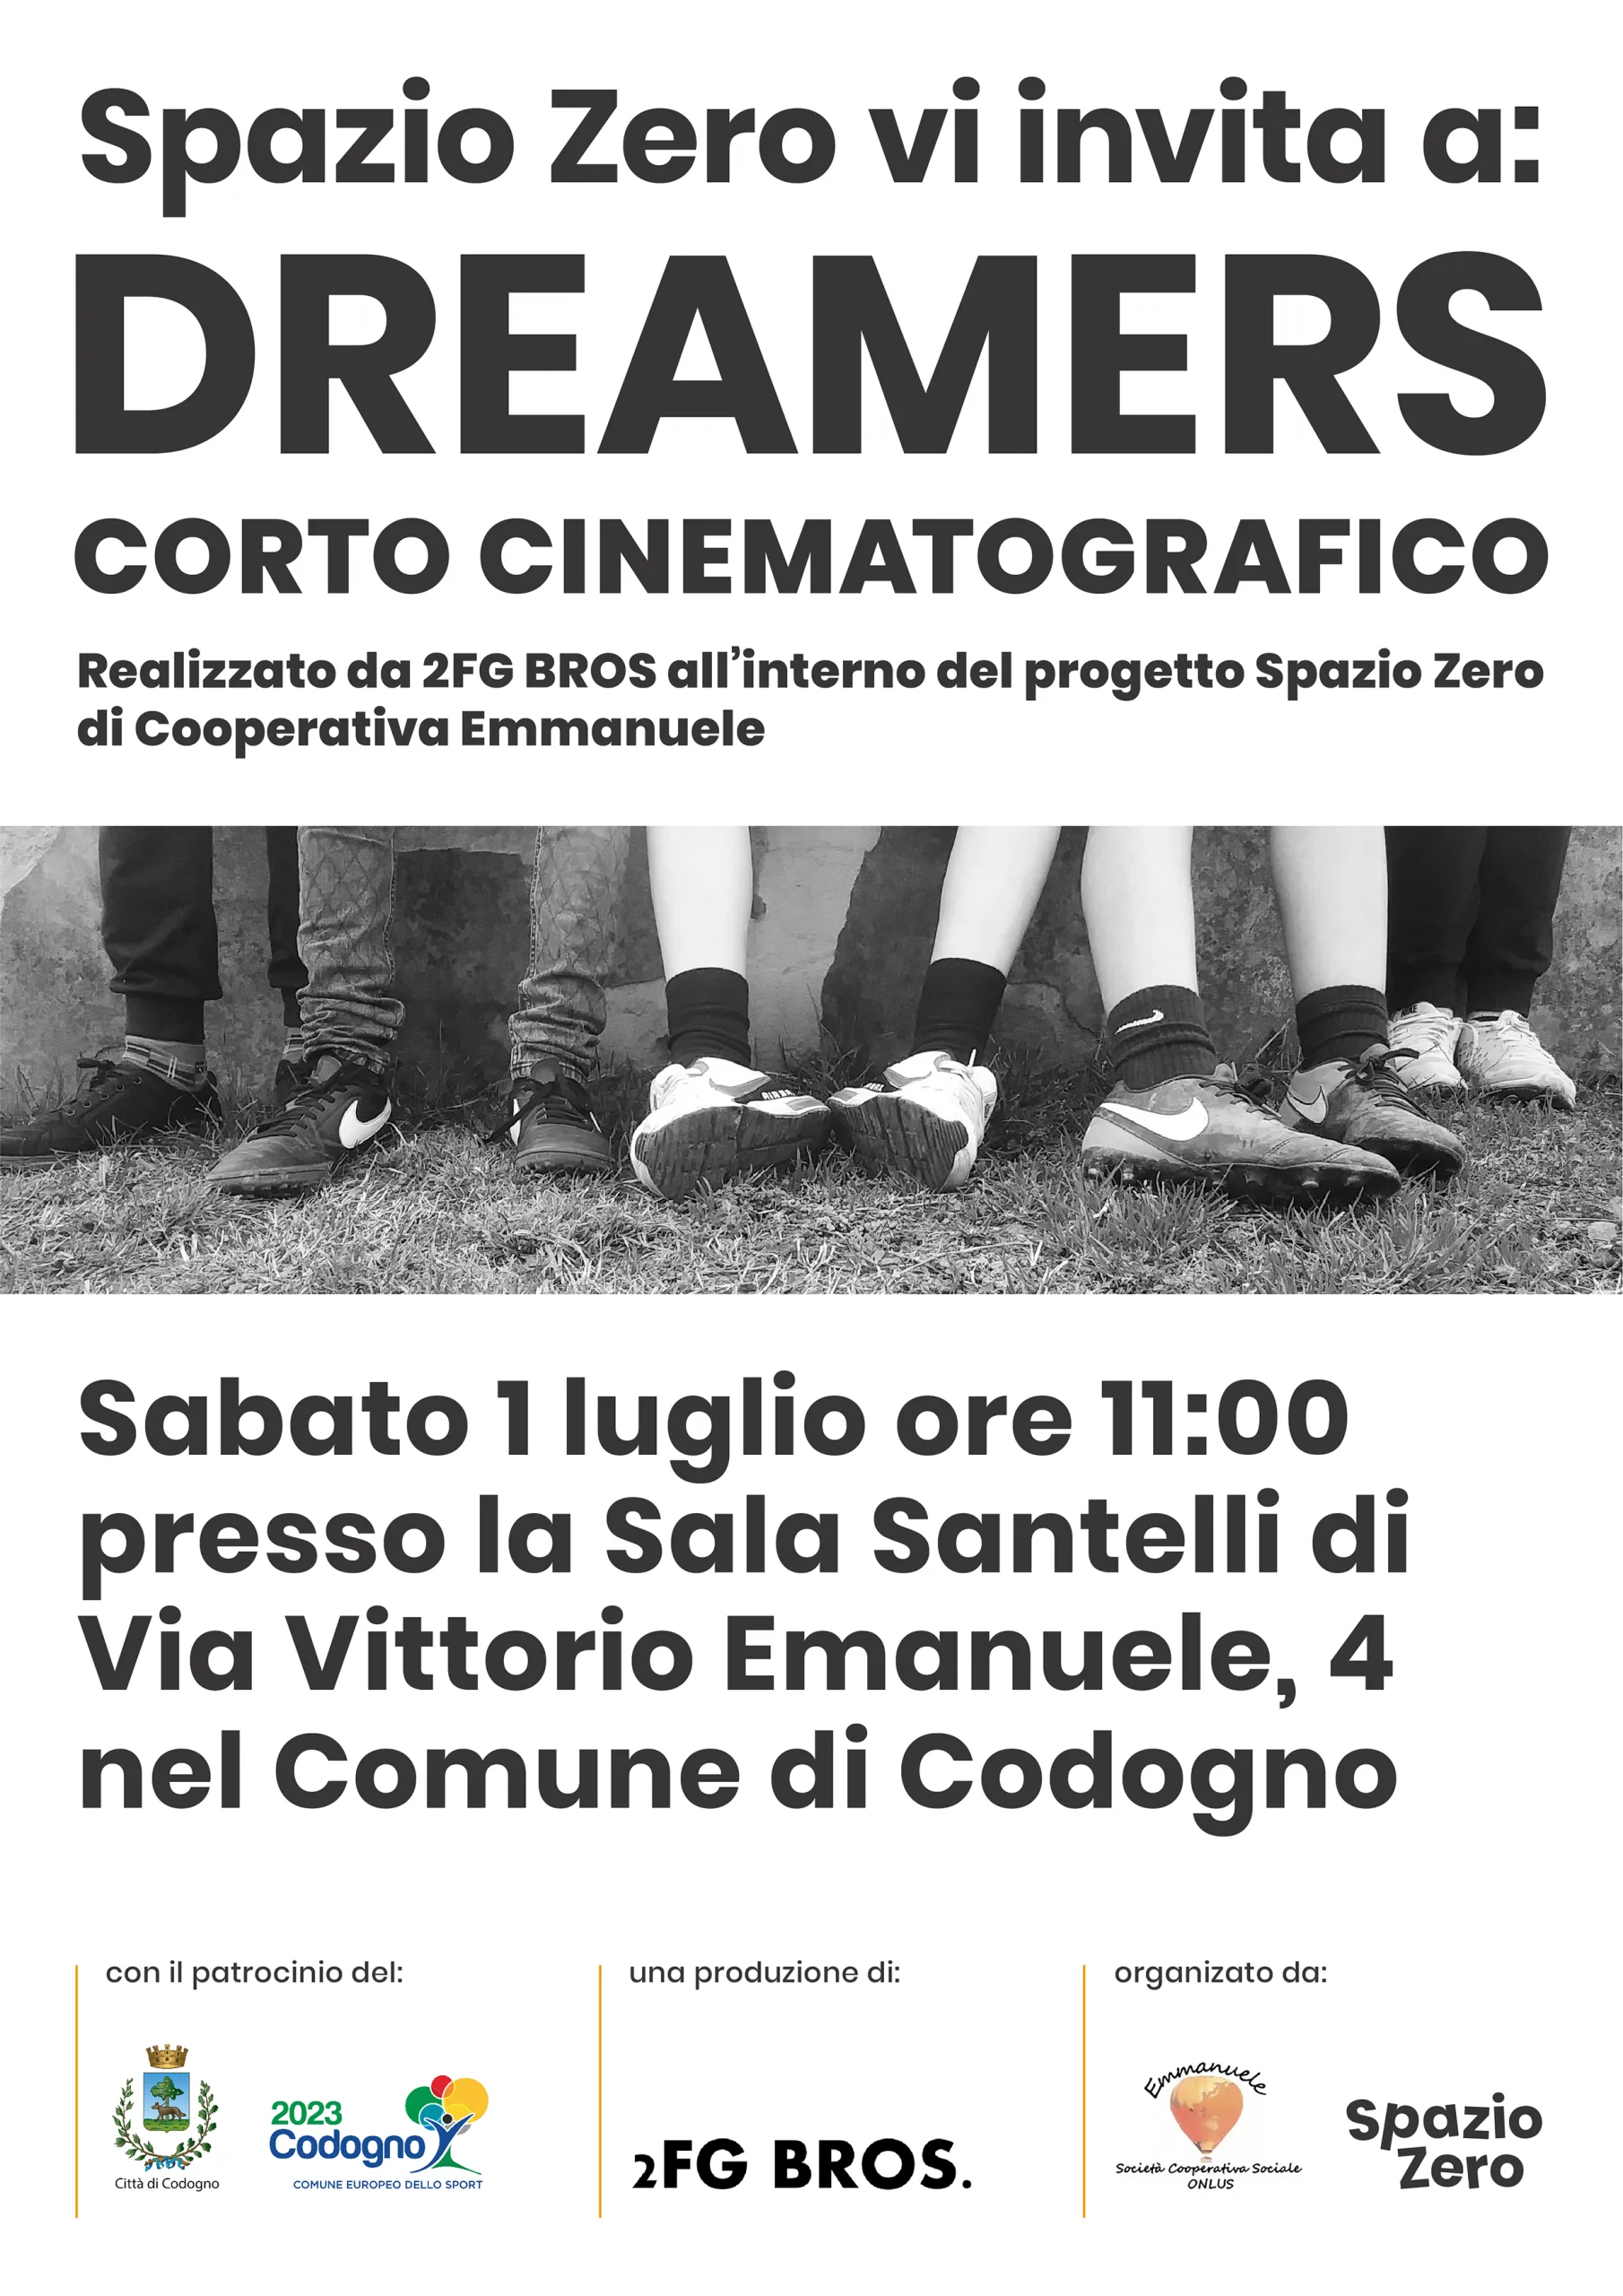 Spazio-Zero-Dreamers-Corto